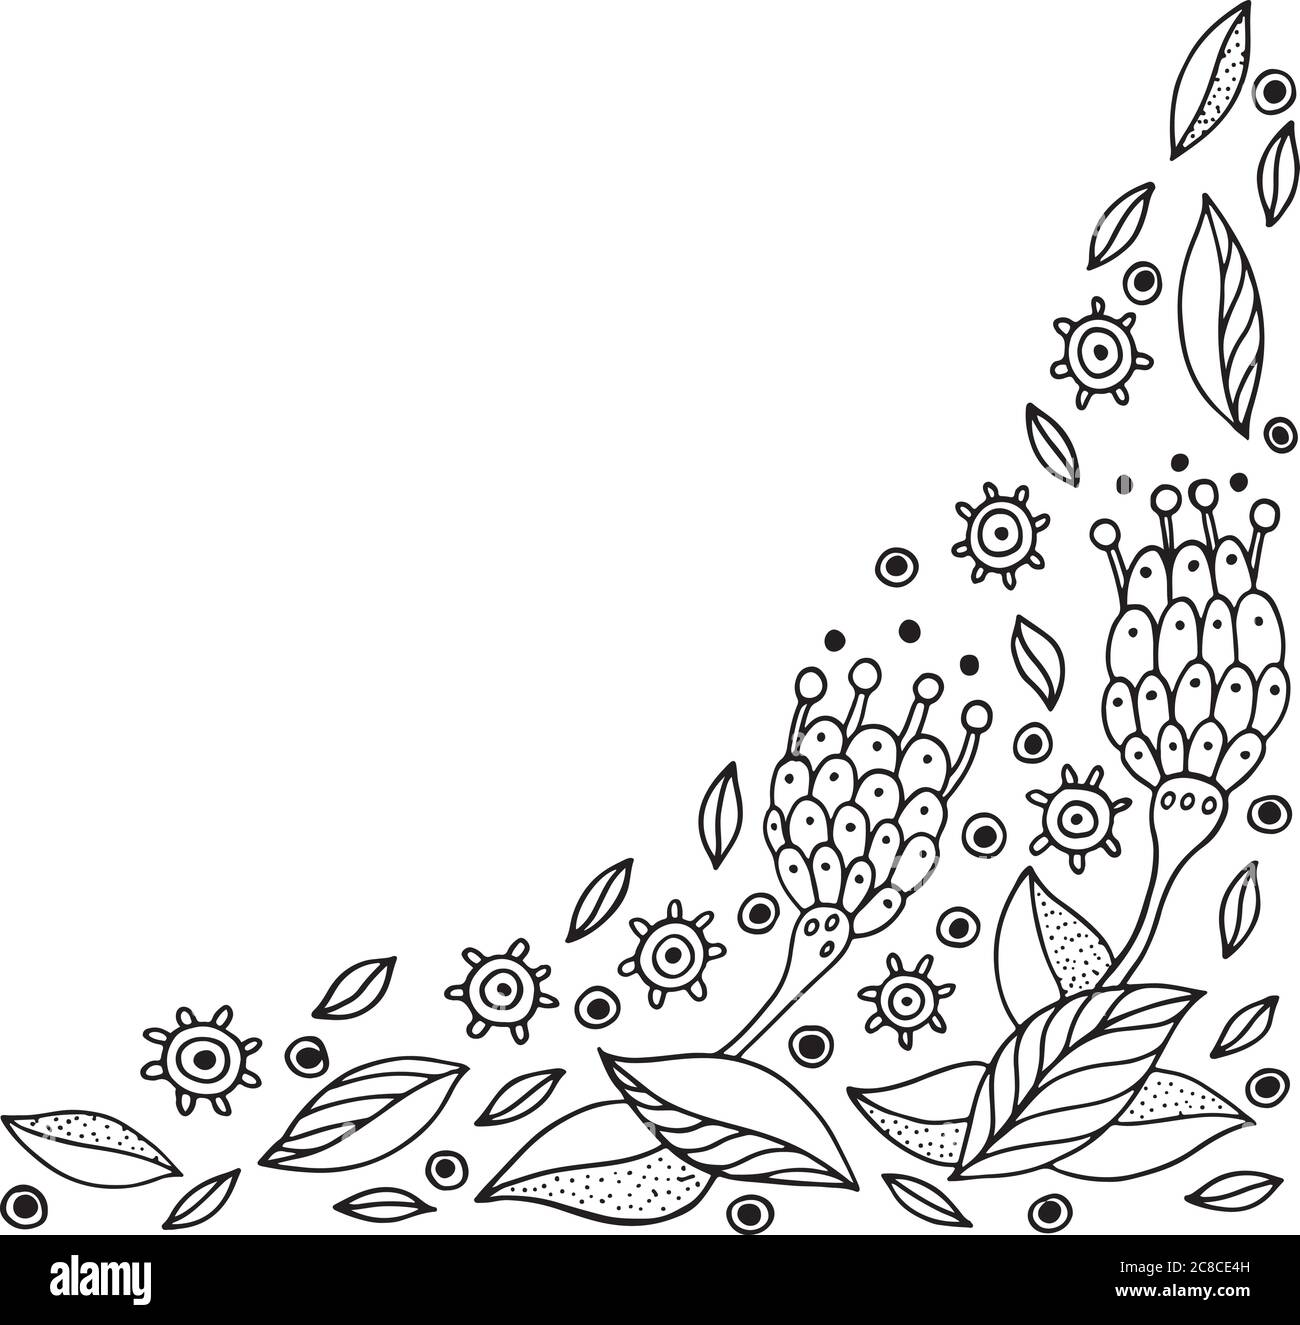 Cadre en forme de Doodle avec fleurs. Page de coloriage pour adultes. Vecteur illu Illustration de Vecteur